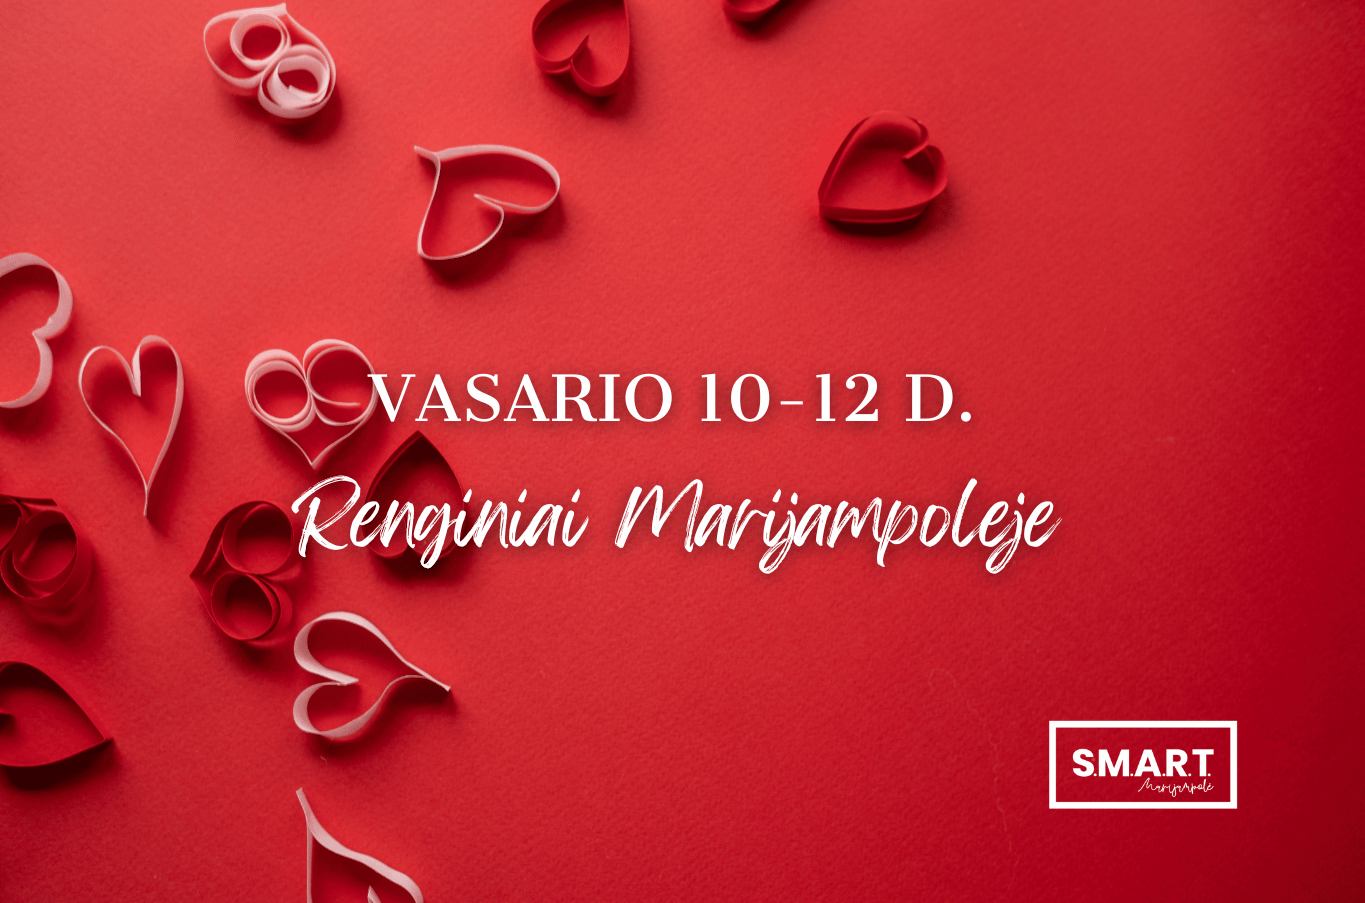 You are currently viewing Savaitgalio renginiai Marijampolėje | 02.10-02.12